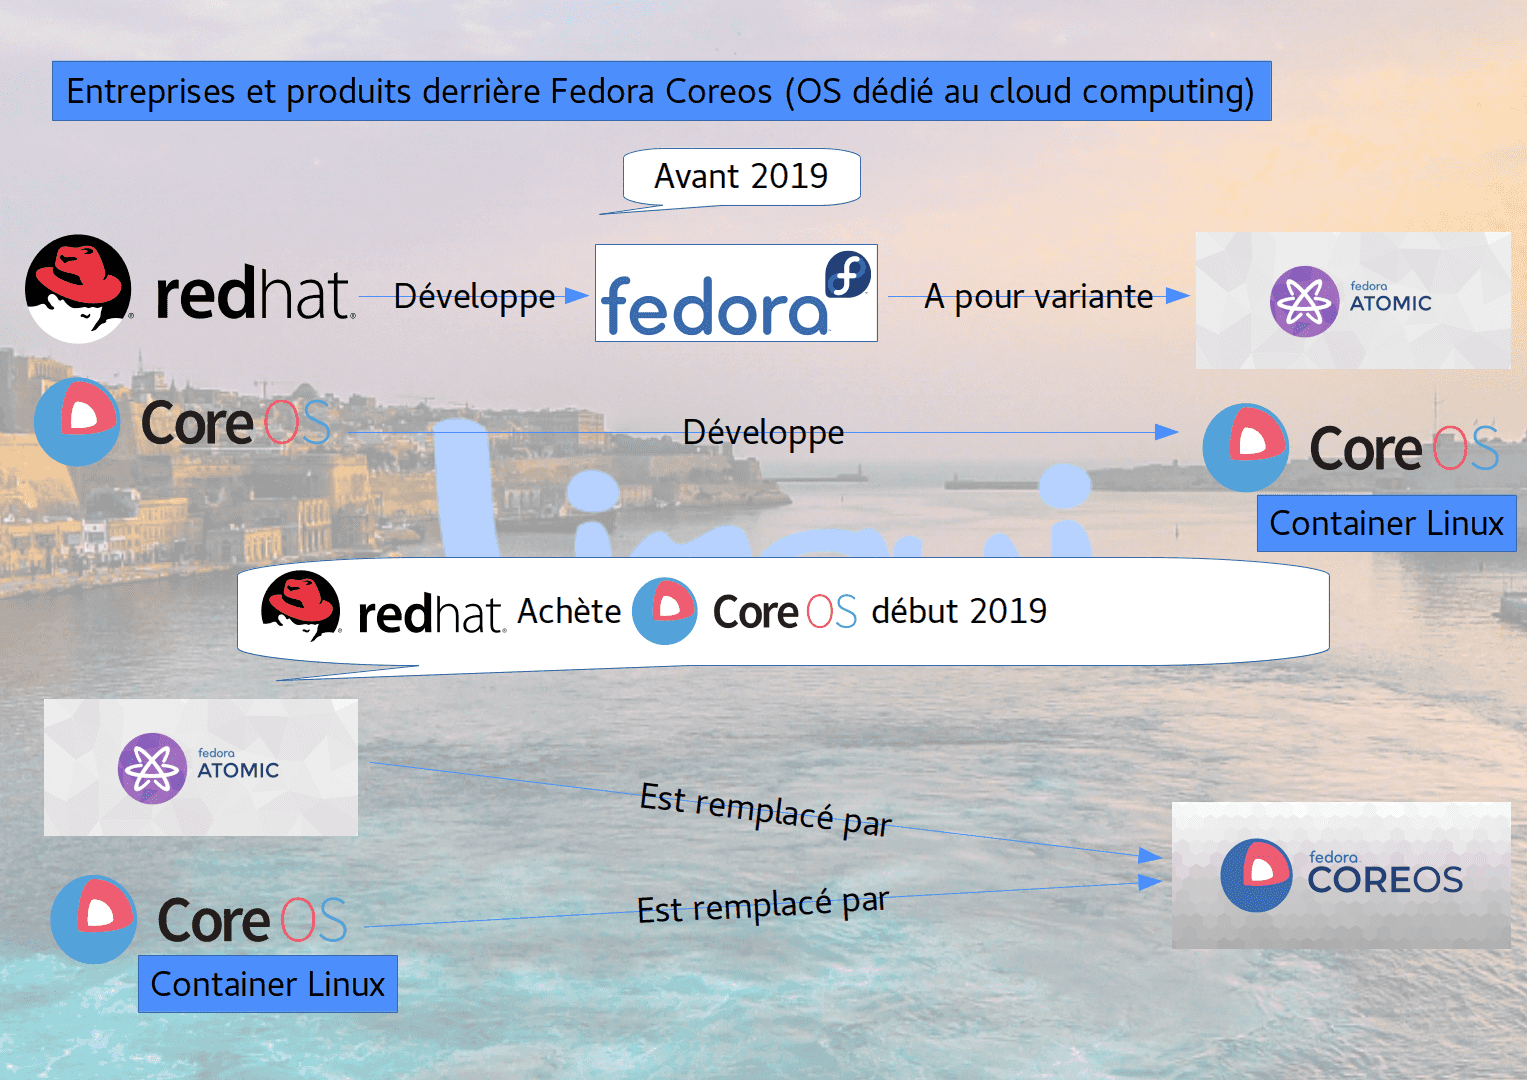 Entreprises et produits derrière Fedora Coreos (OS dédié au cloud computing).